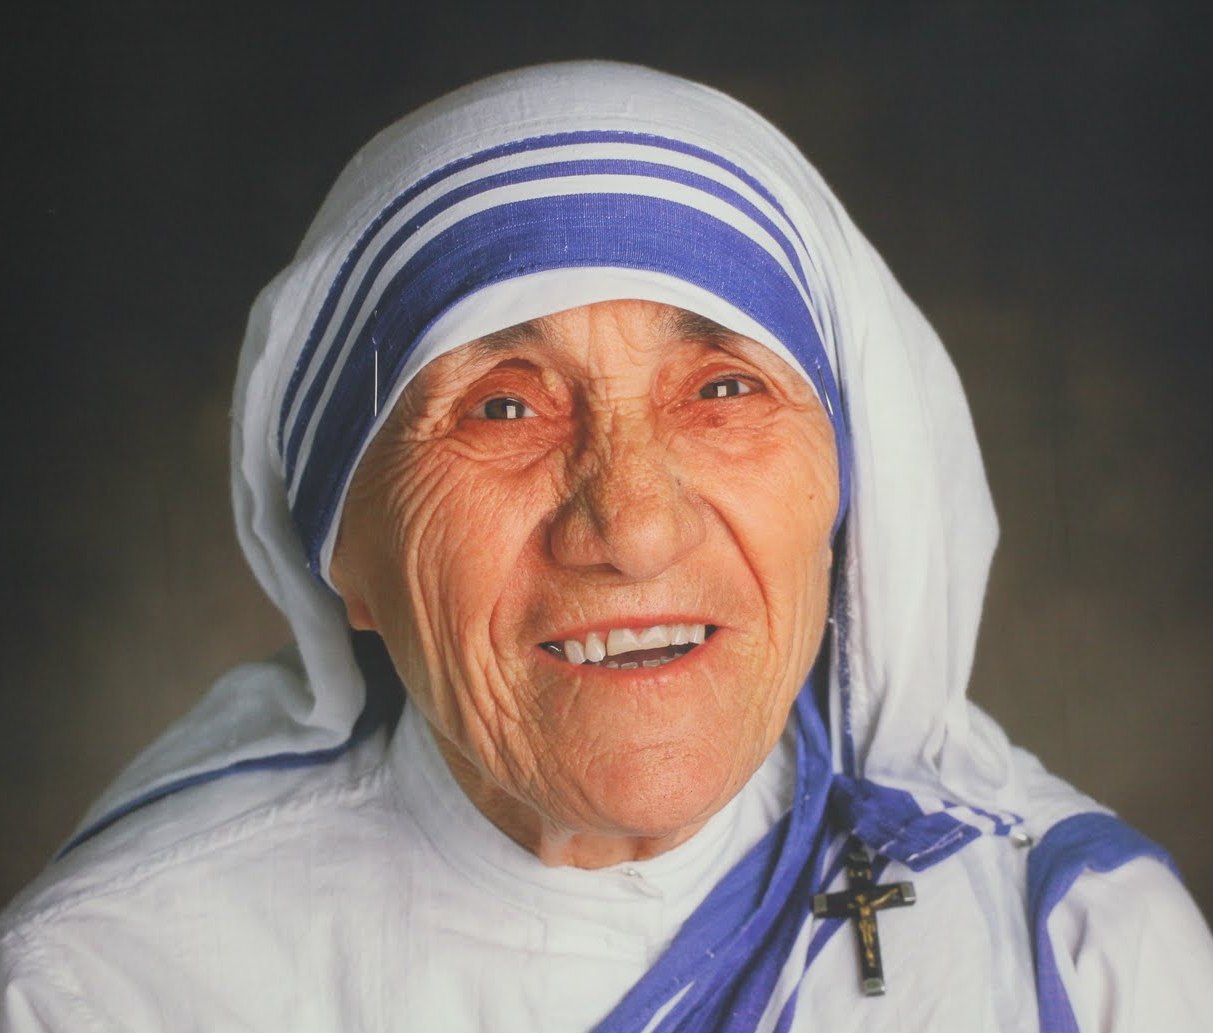 Remembering Mother Teresa